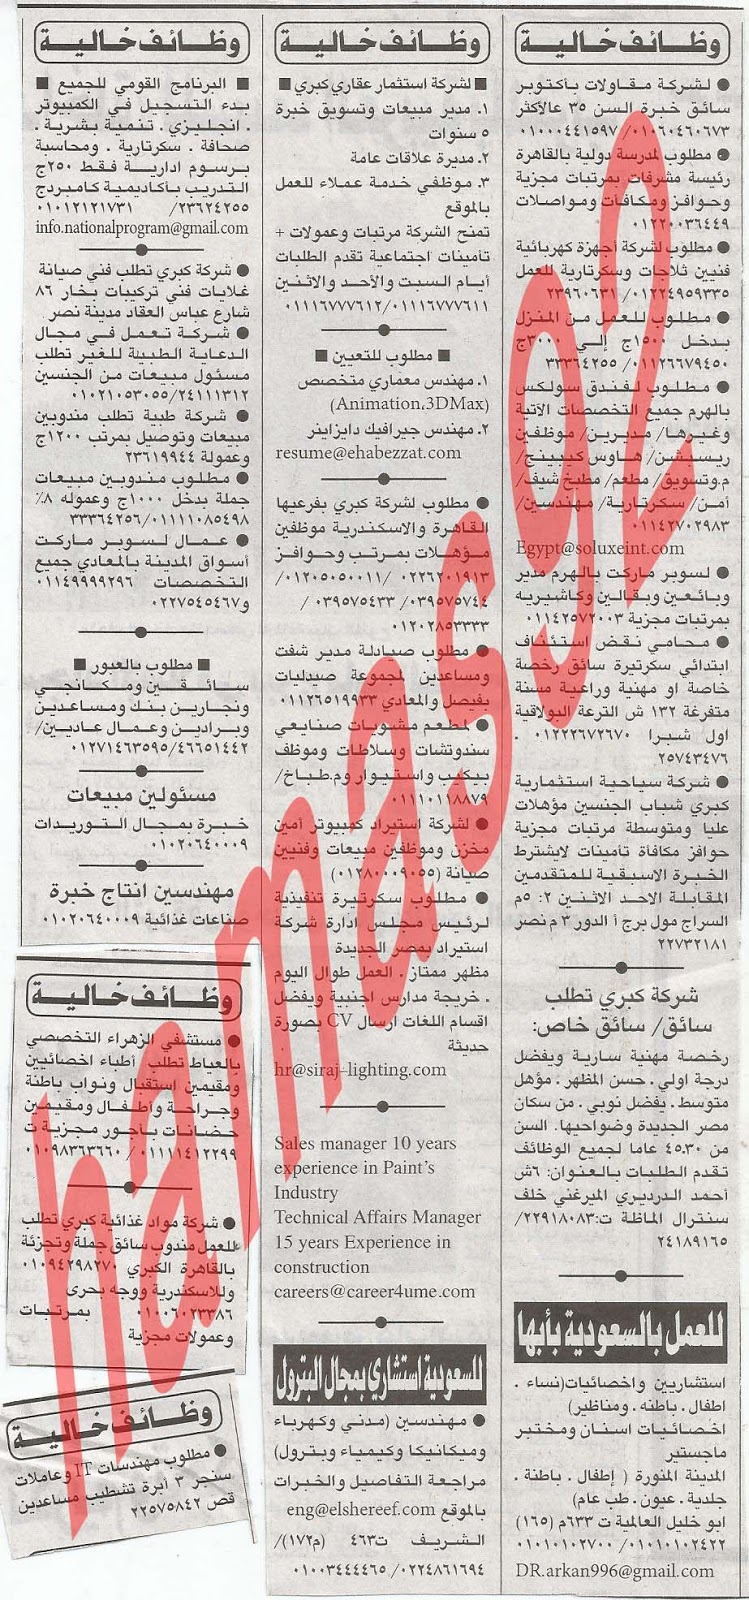 وظائف جريدة الاهرام الجمعة 22/2/2013 1